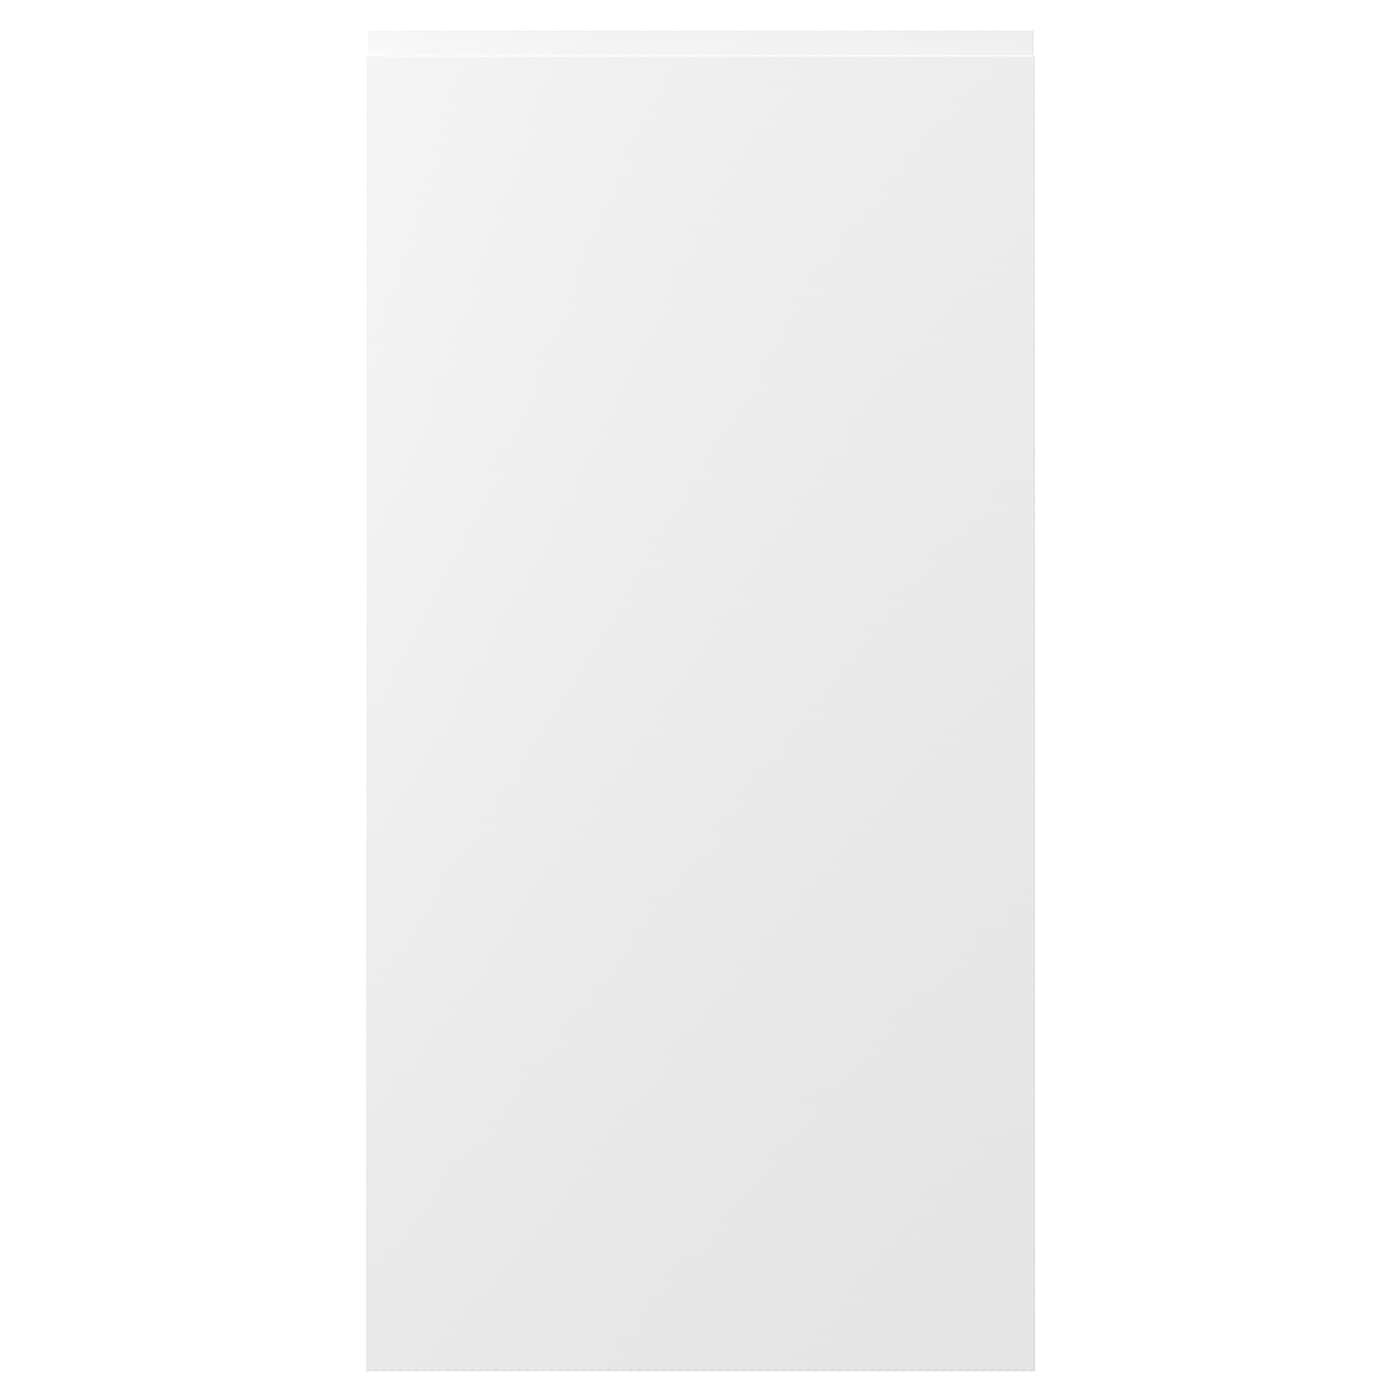 Дверца - IKEA VOXTORP, 120х60 см, матовый белый, ВОКСТОРП ИКЕА